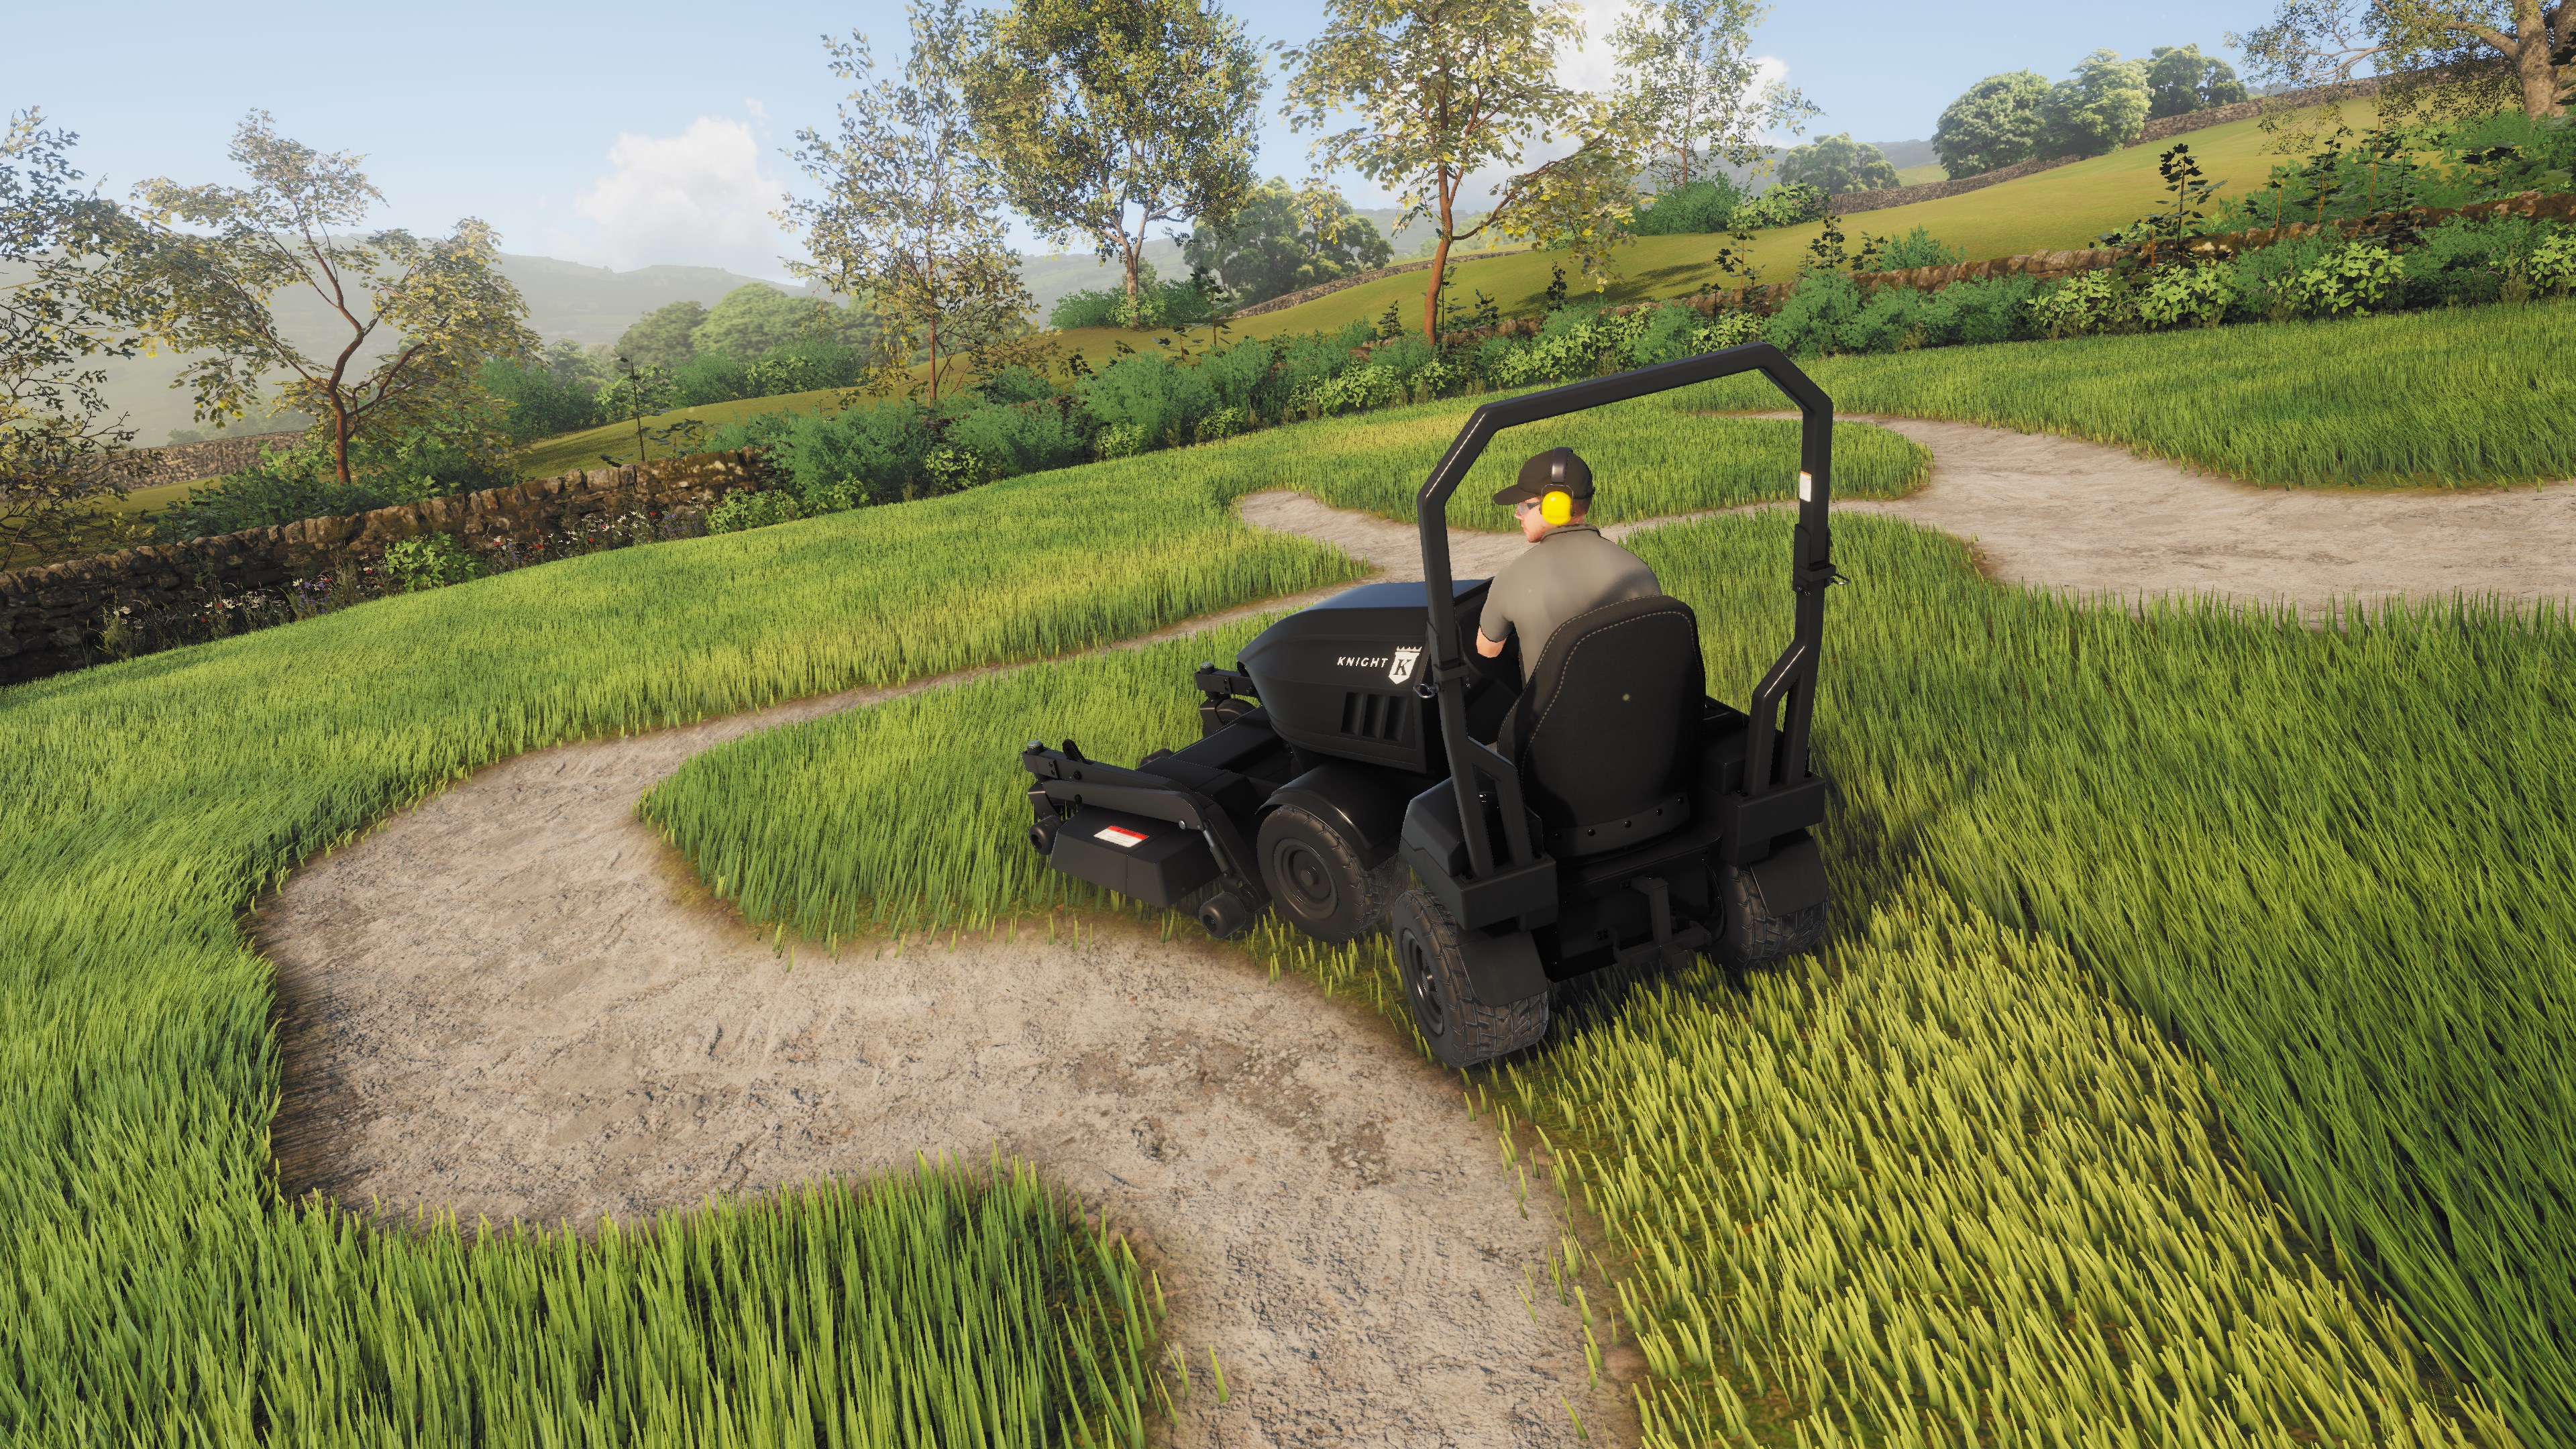 Lawn Mowing Simulator - Ancient Britain screenshot 43285